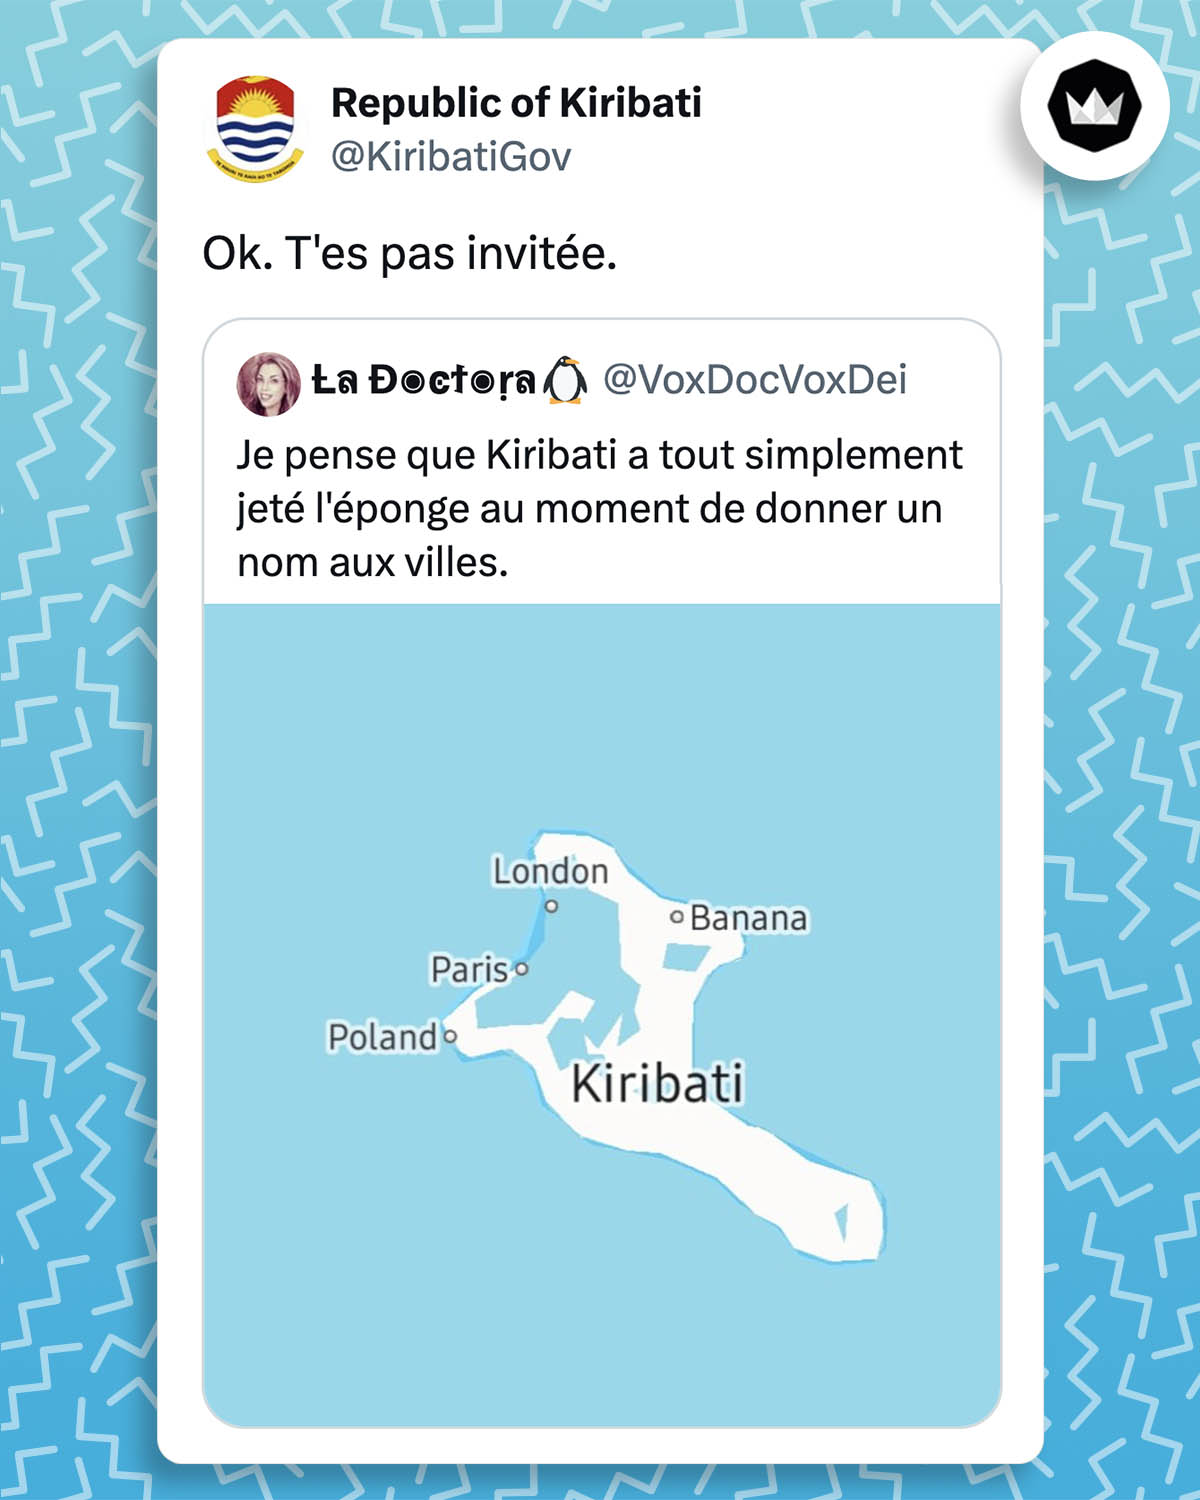 Internaute : 
"Je pense que Kiribati a tout simplement jeté l'éponge au moment de donner un nom aux villes" avec l'image de l'île Kirimati et les noms des villes : "Poland", "Paris", "London", "Banana".
Kiribatigov : "Ok, t'es pas invitée."